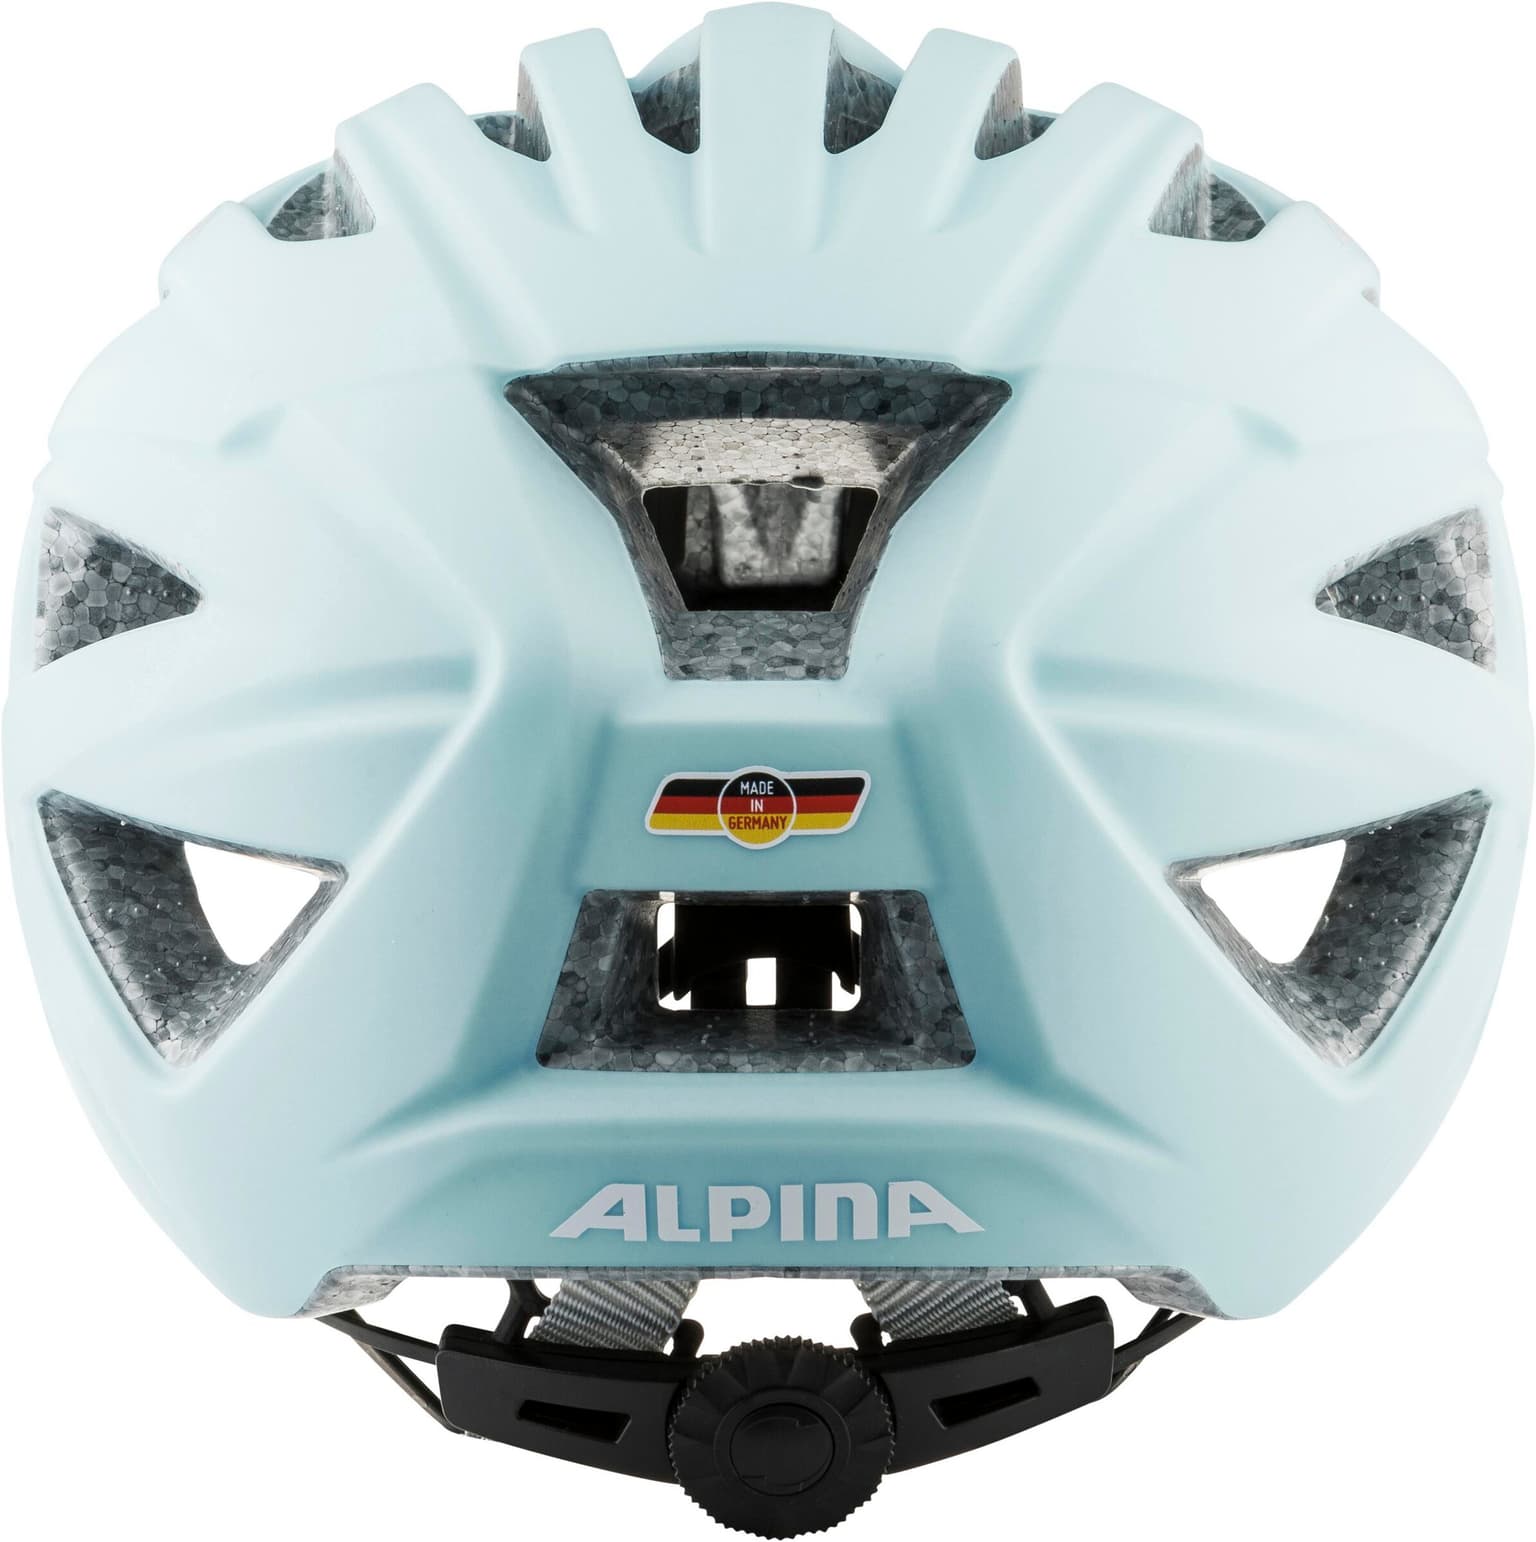 Alpina Alpina PARANA casque de vélo aqua 4